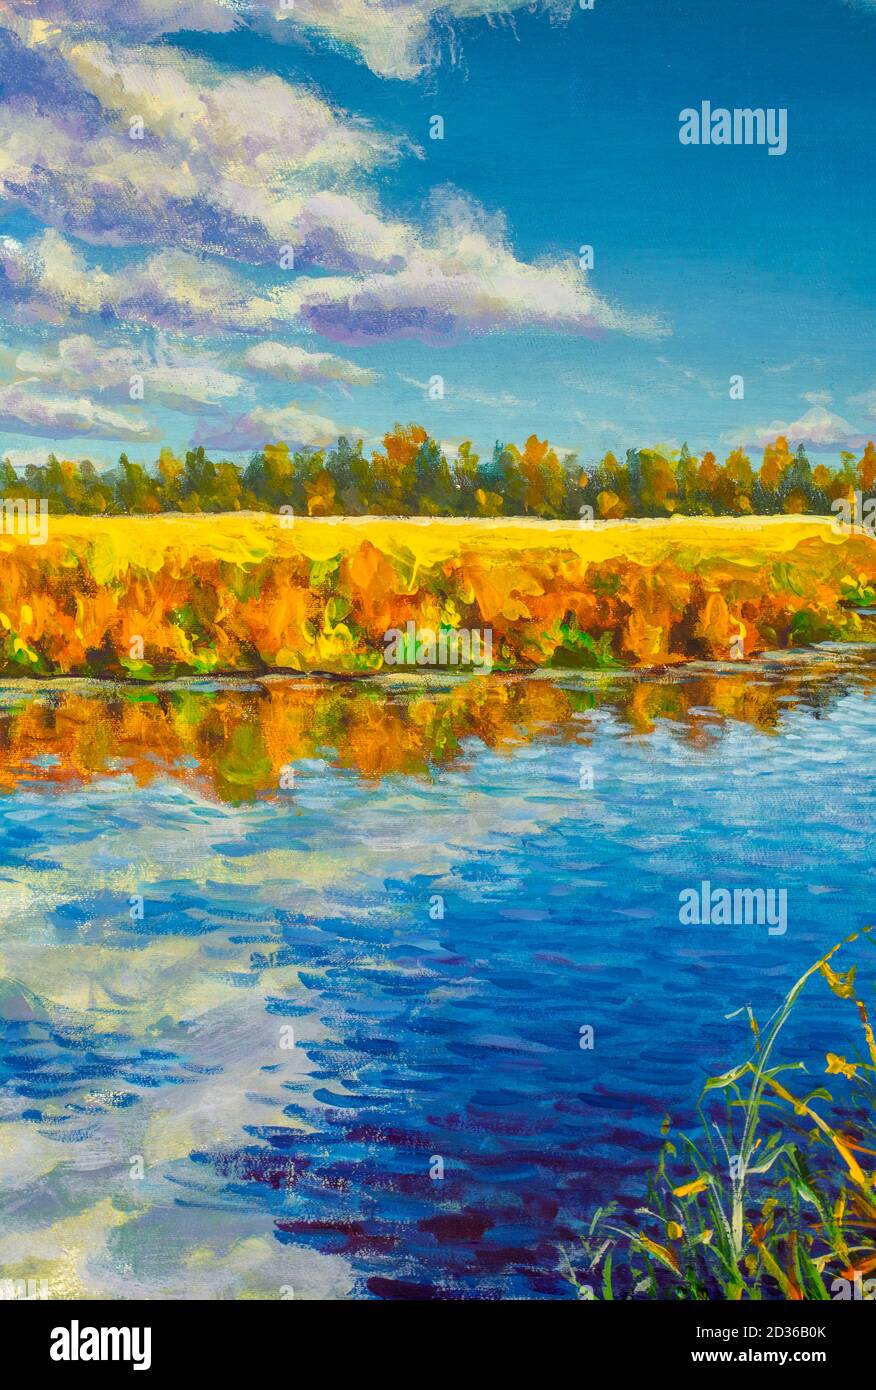 Huile acrylique peinture or automne sur rivière mer étang eau. Orangers reflétés dans l'eau bleue illustration moderne des beaux-arts sur toile Banque D'Images